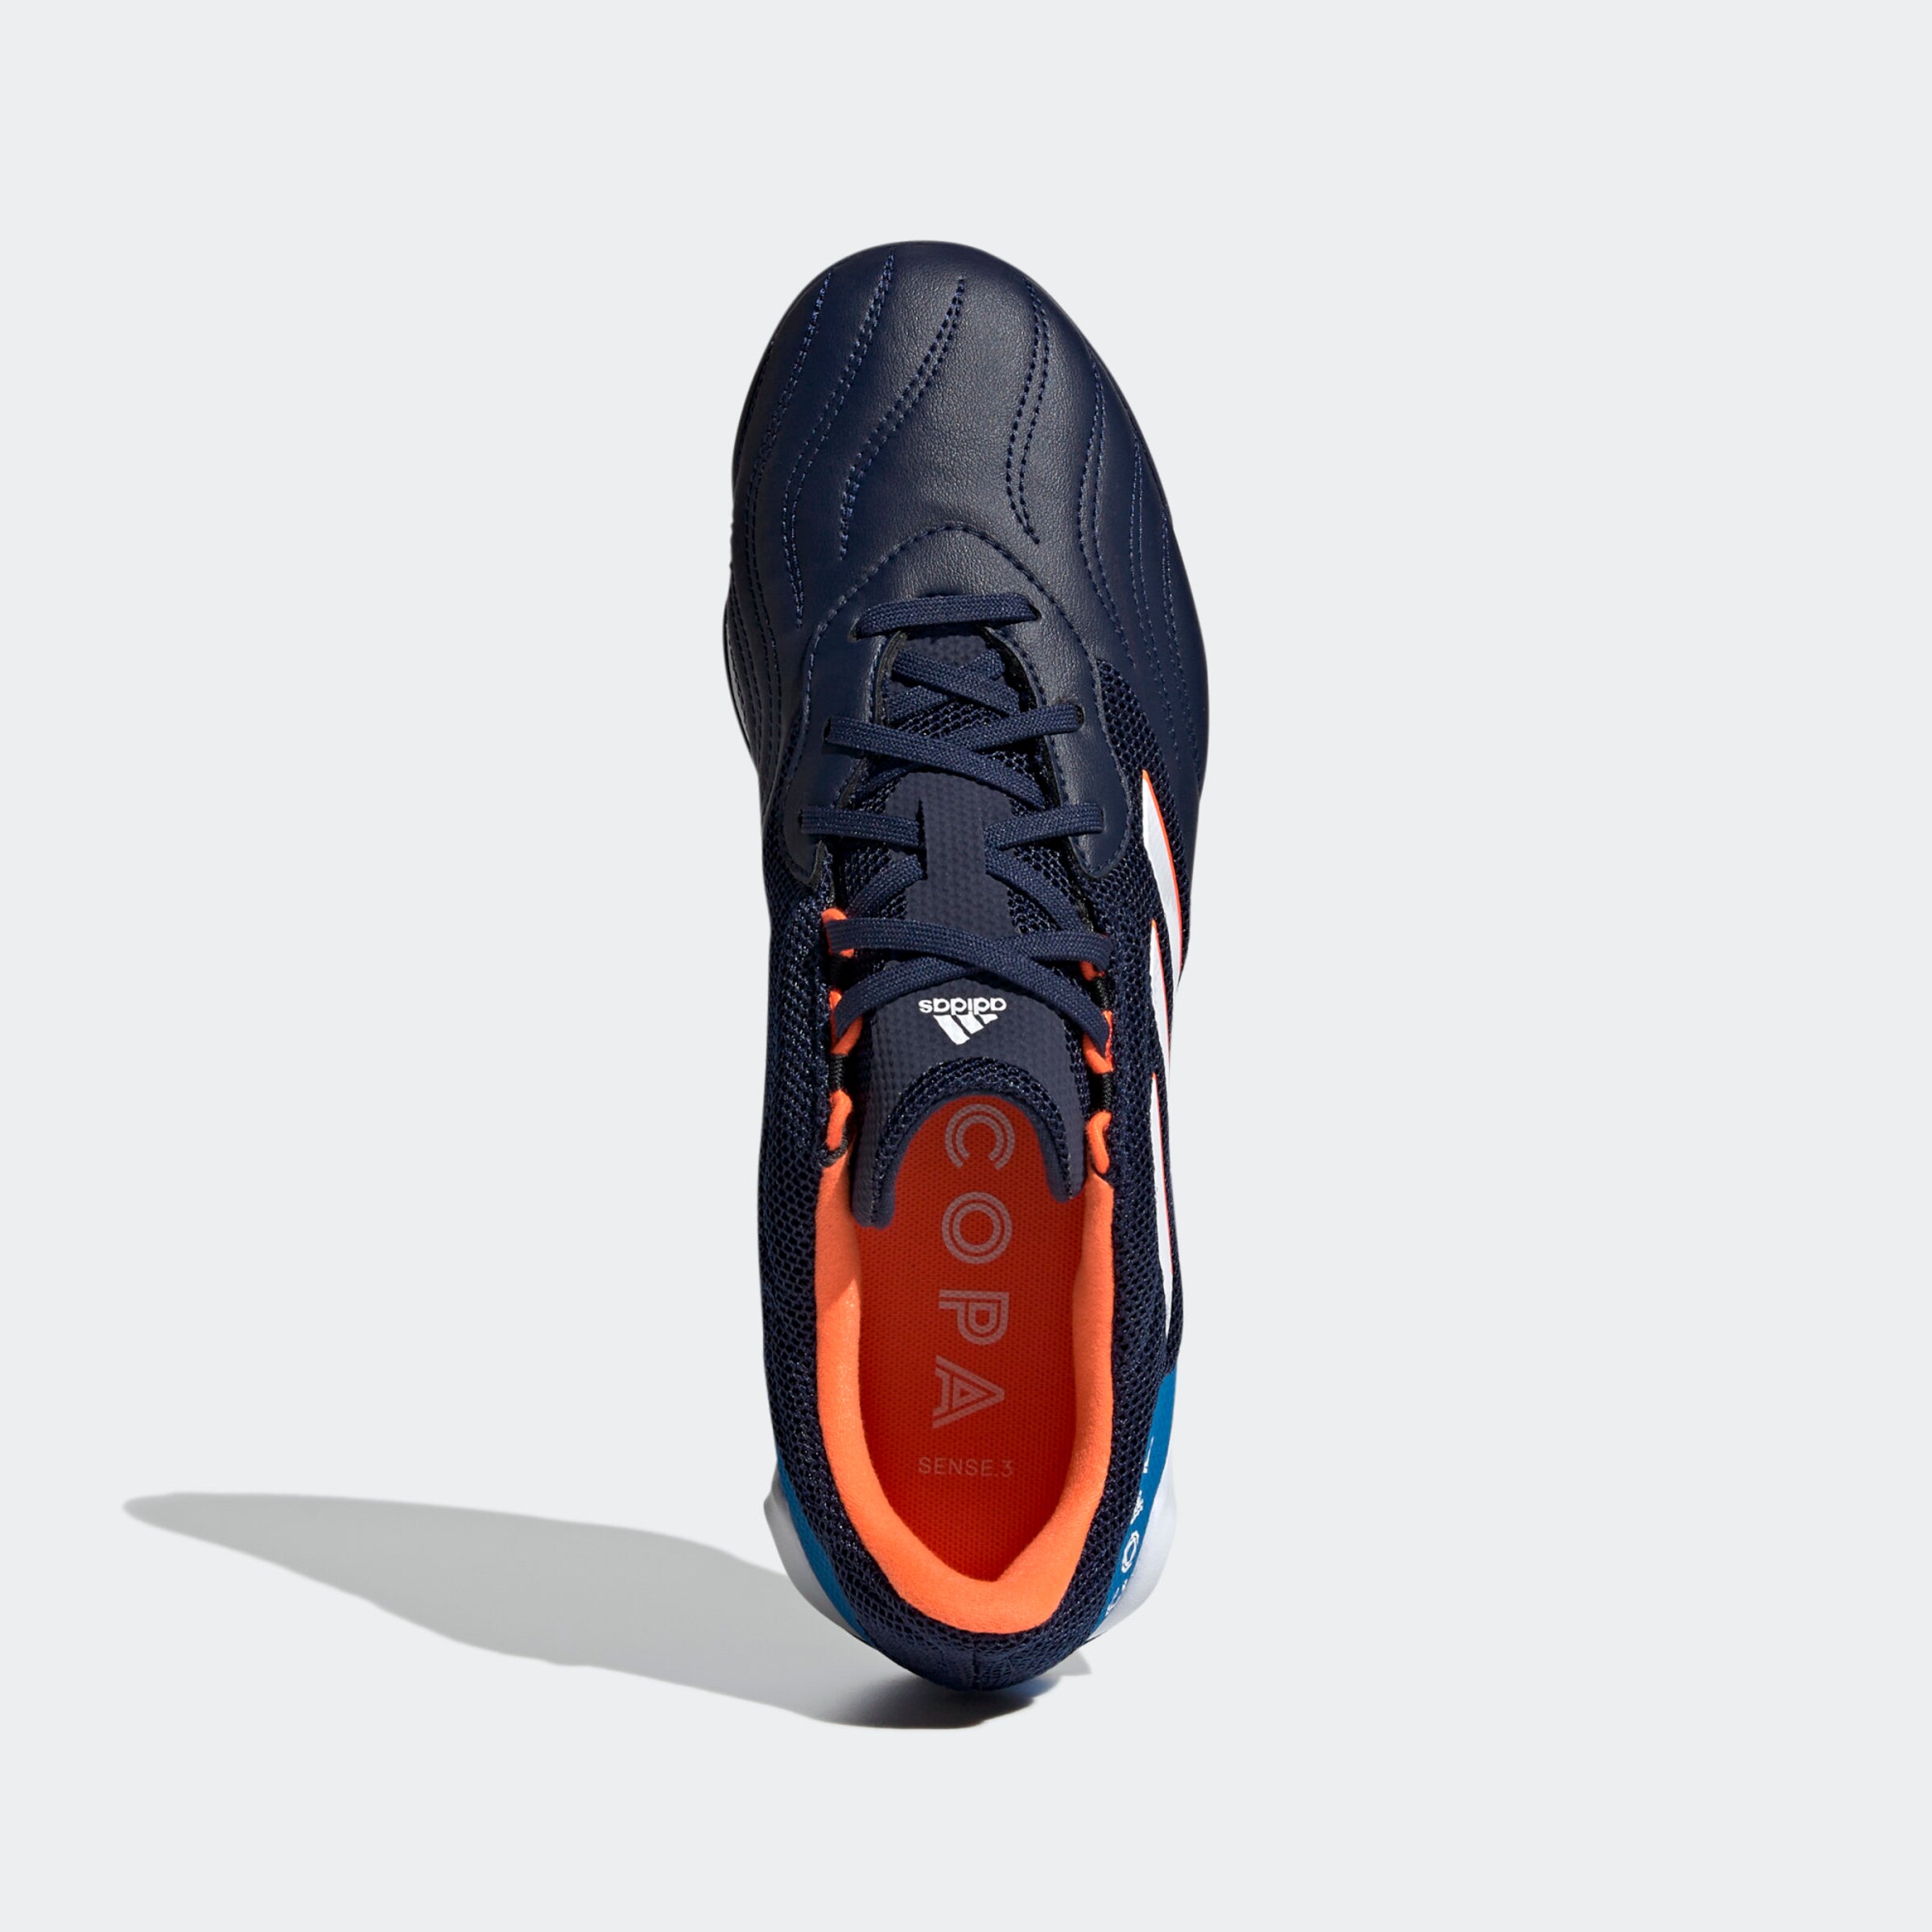 Chaussures de sport Chaussure de foot Copa Sense 3 Sala ADIDAS PERFORMANCE en Bleu Marine, Bleu 